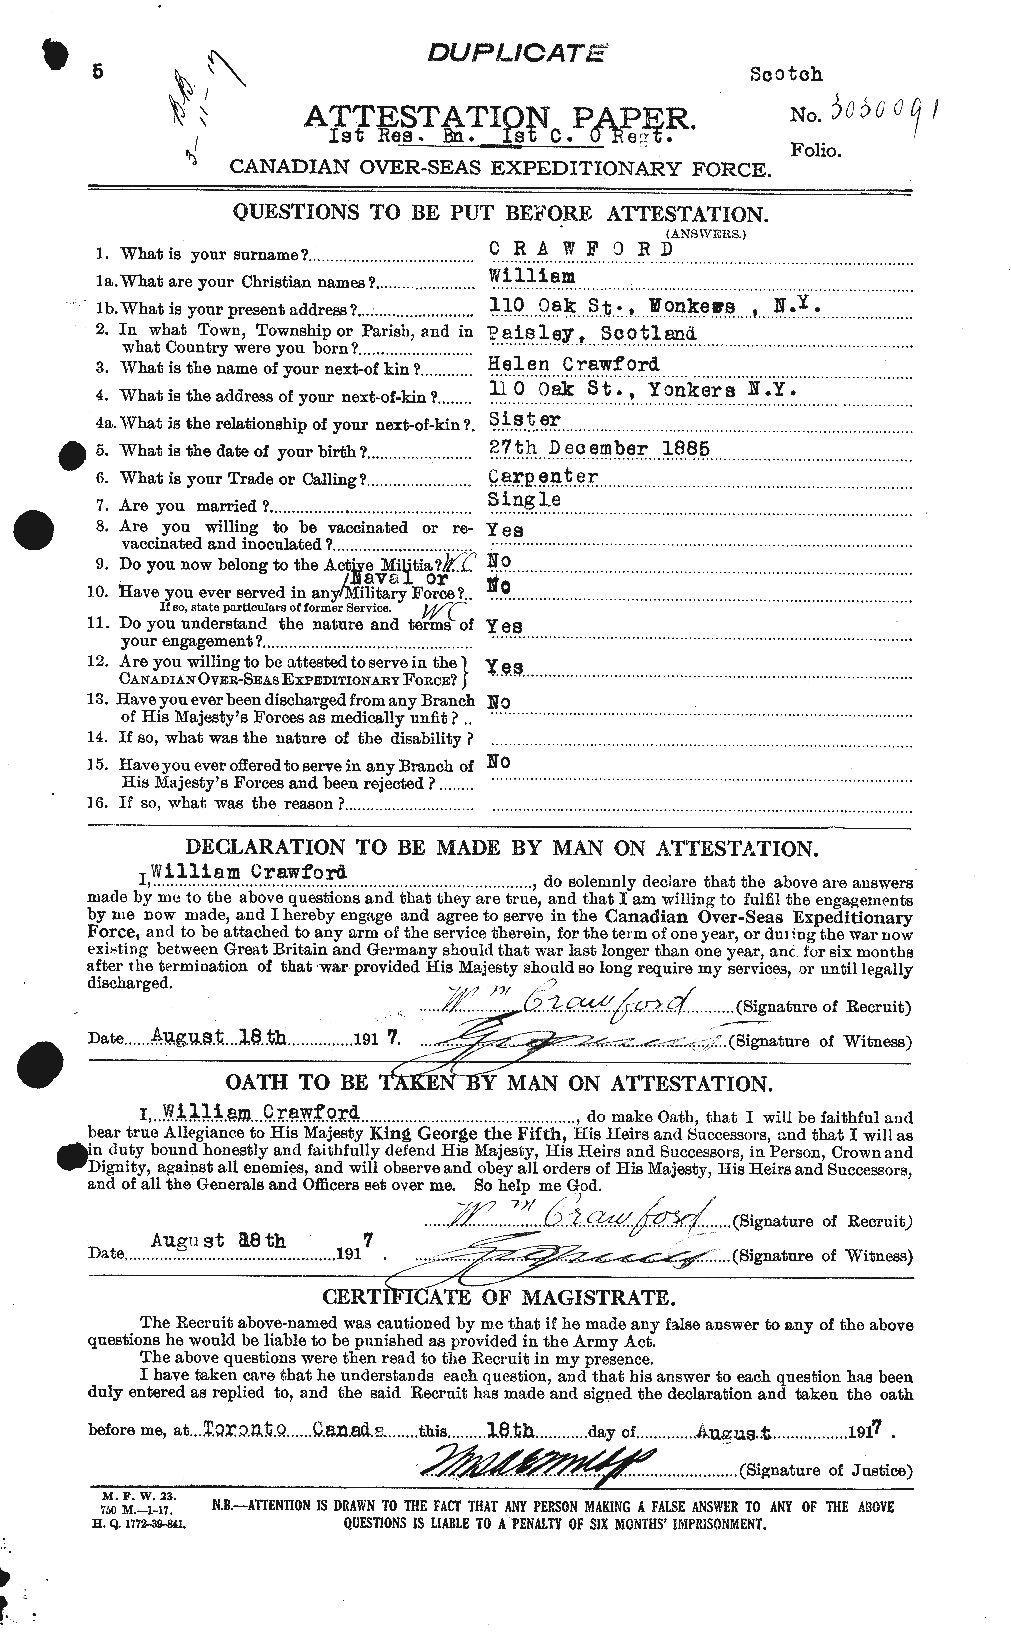 Dossiers du Personnel de la Première Guerre mondiale - CEC 061158a